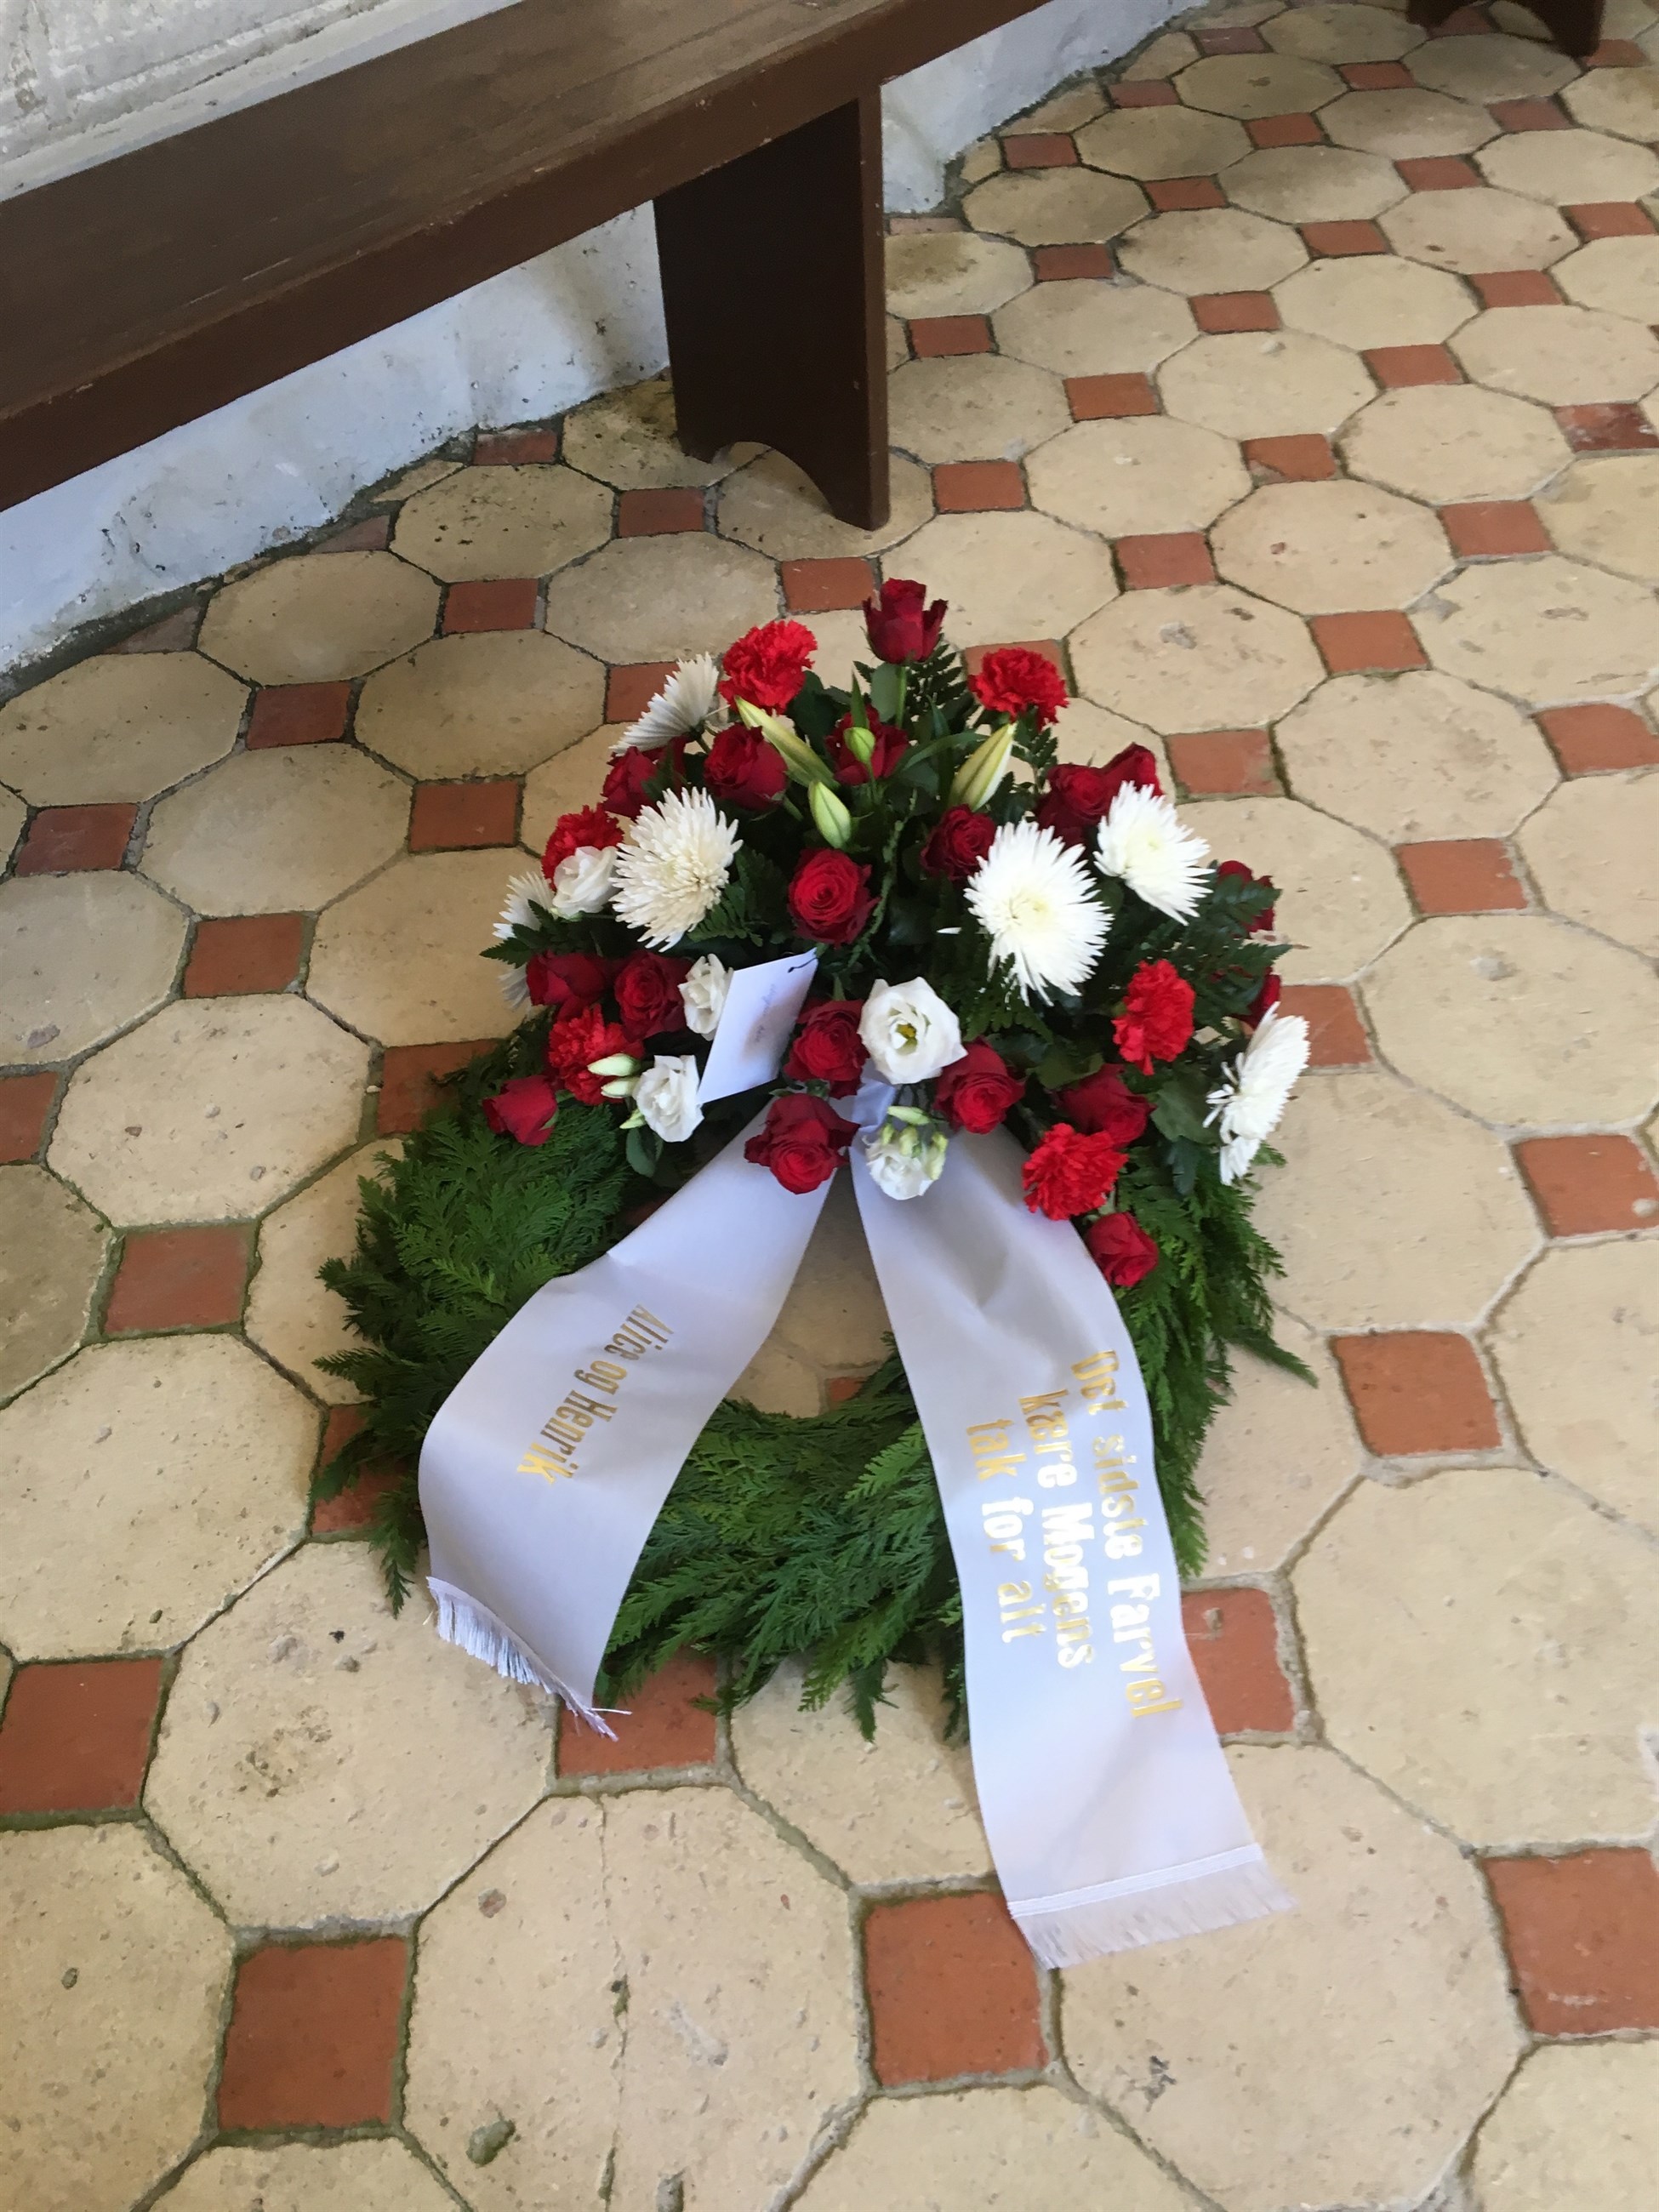 jernbane træk uld over øjnene Identitet Bårebuketter til begravelse i Haslev | Blomsterkranse til kirken